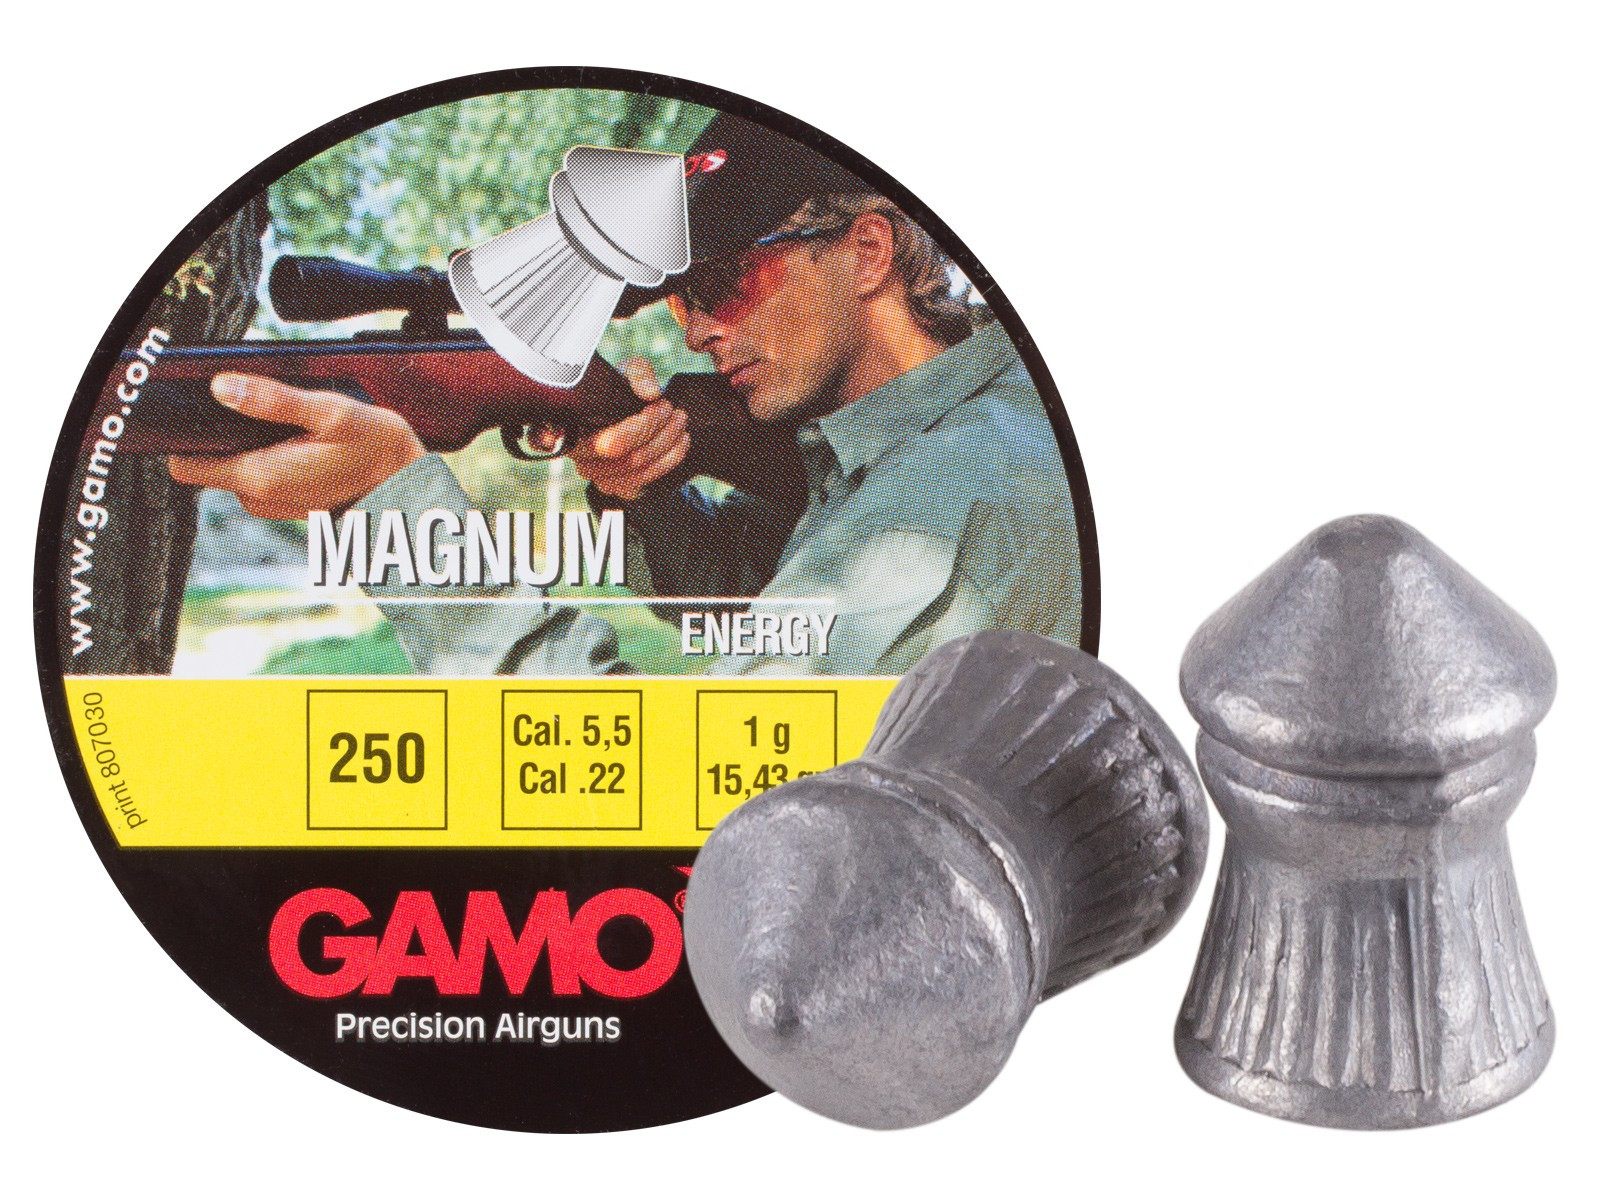 Gamo Magnum .22 Cal, 15.43 gr - 250 ct